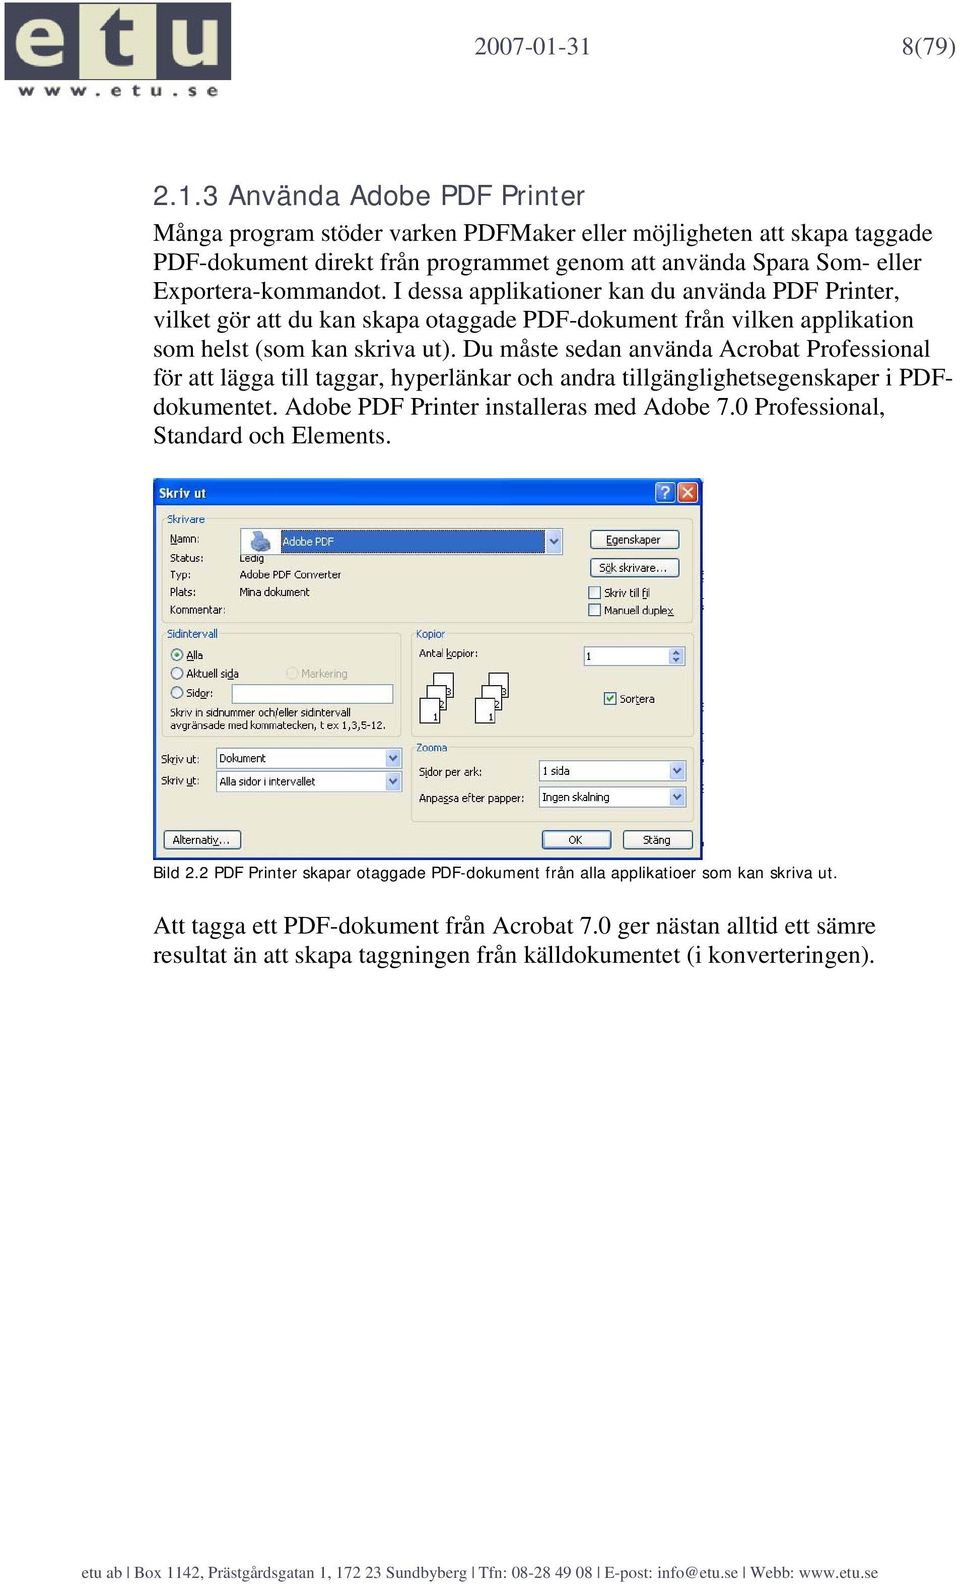 Du måste sedan använda Acrobat Professional för att lägga till taggar, hyperlänkar och andra tillgänglighetsegenskaper i PDFdokumentet. Adobe PDF Printer installeras med Adobe 7.